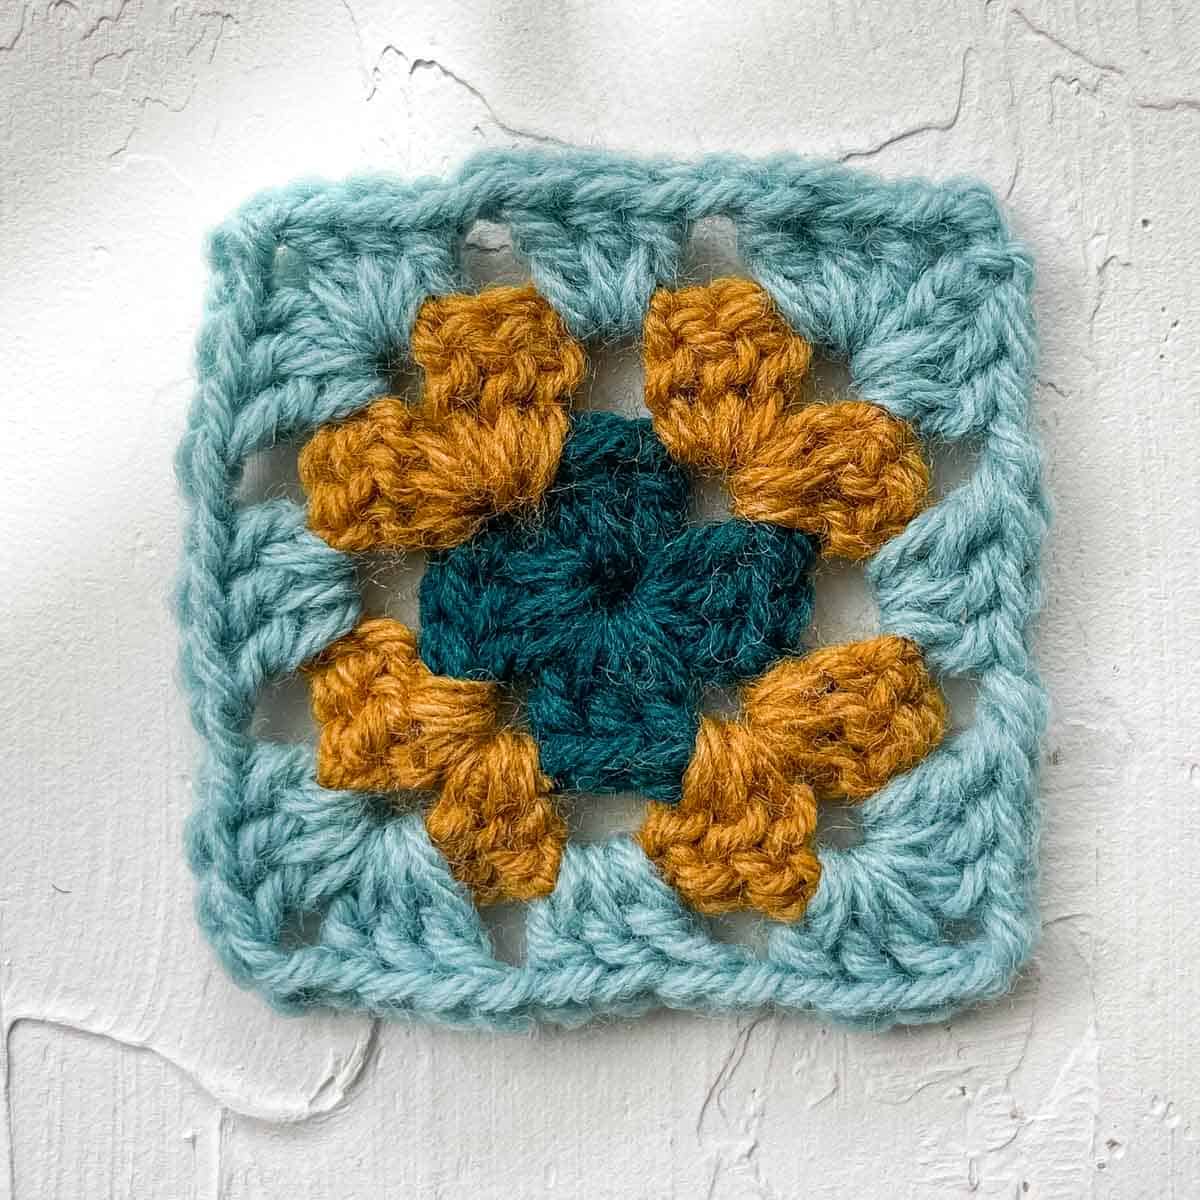 Granny square tutorial round 2: 36 double crochets.